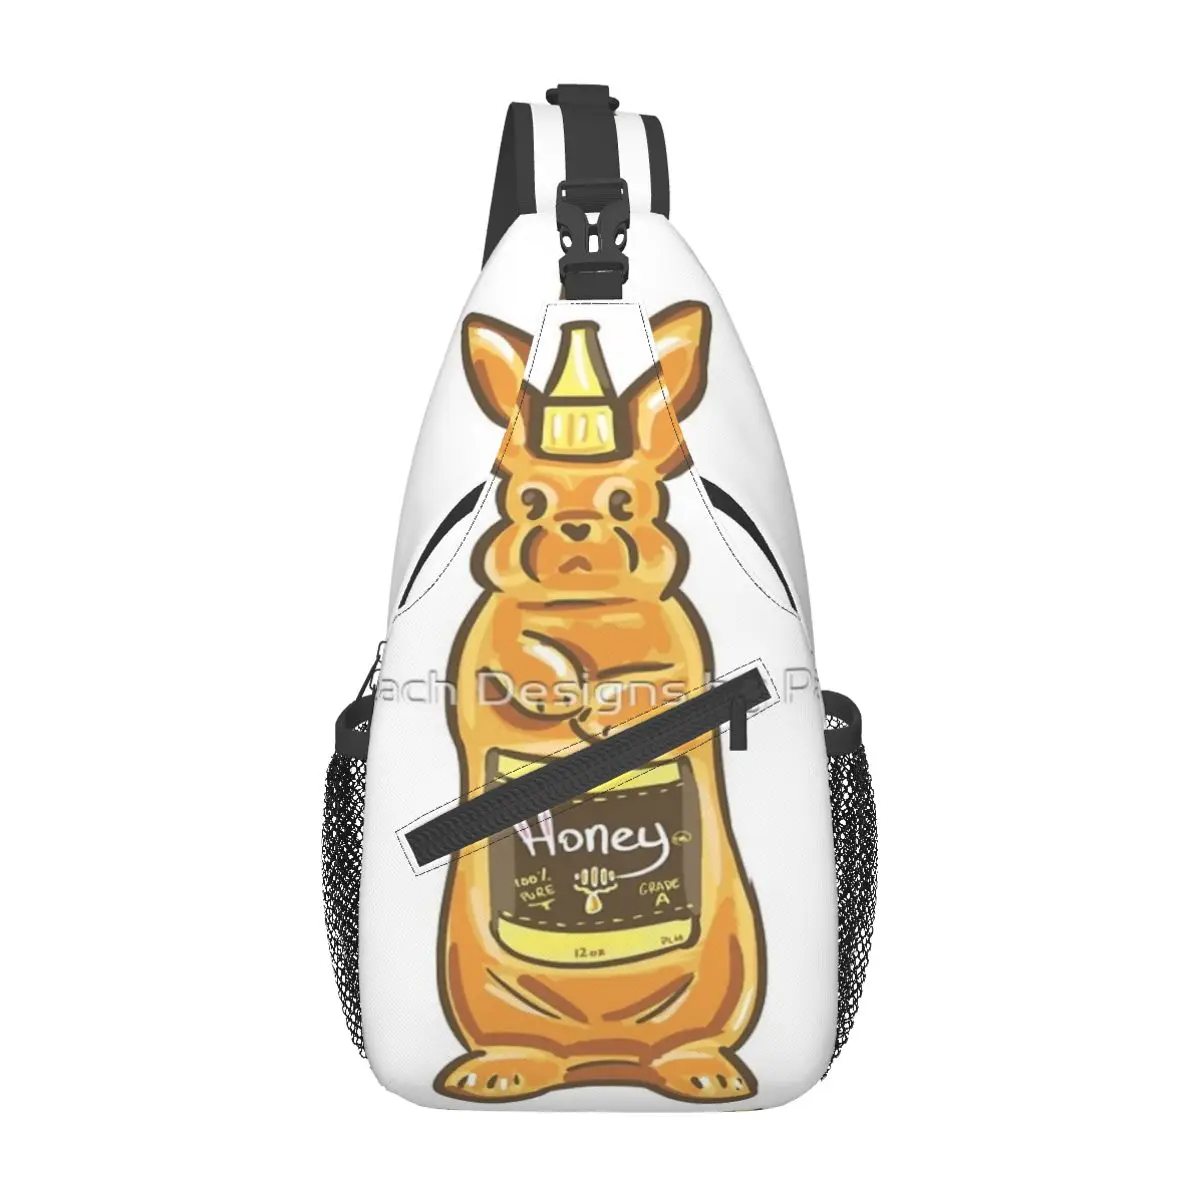 

Нагрудная сумка Honey Bunny, модная прочная нагрудная сумка через плечо по диагонали, несколько стилей